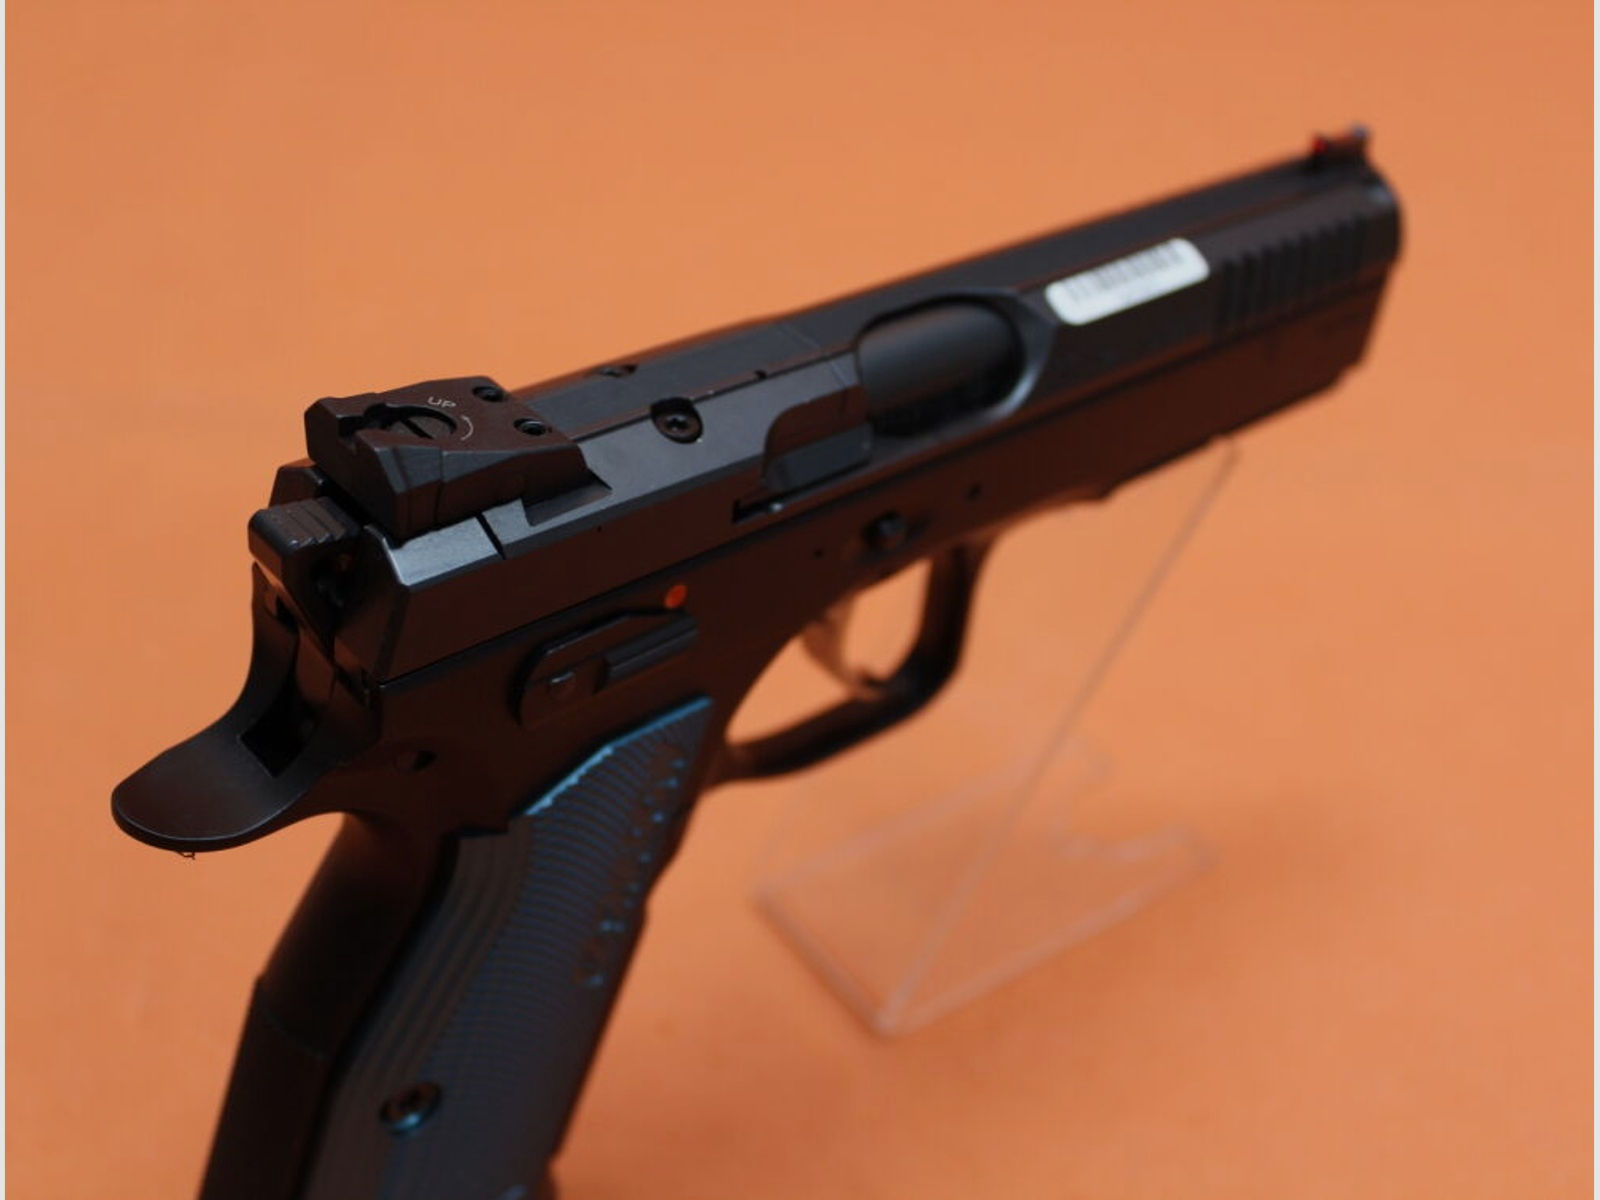 CZUB	 Ha.Pistole 9mmLuger CZUB SHADOW2 OR Optics Ready 119mm Lauf/ für Red Dot Sight (9mmPara/9x19) CZ75